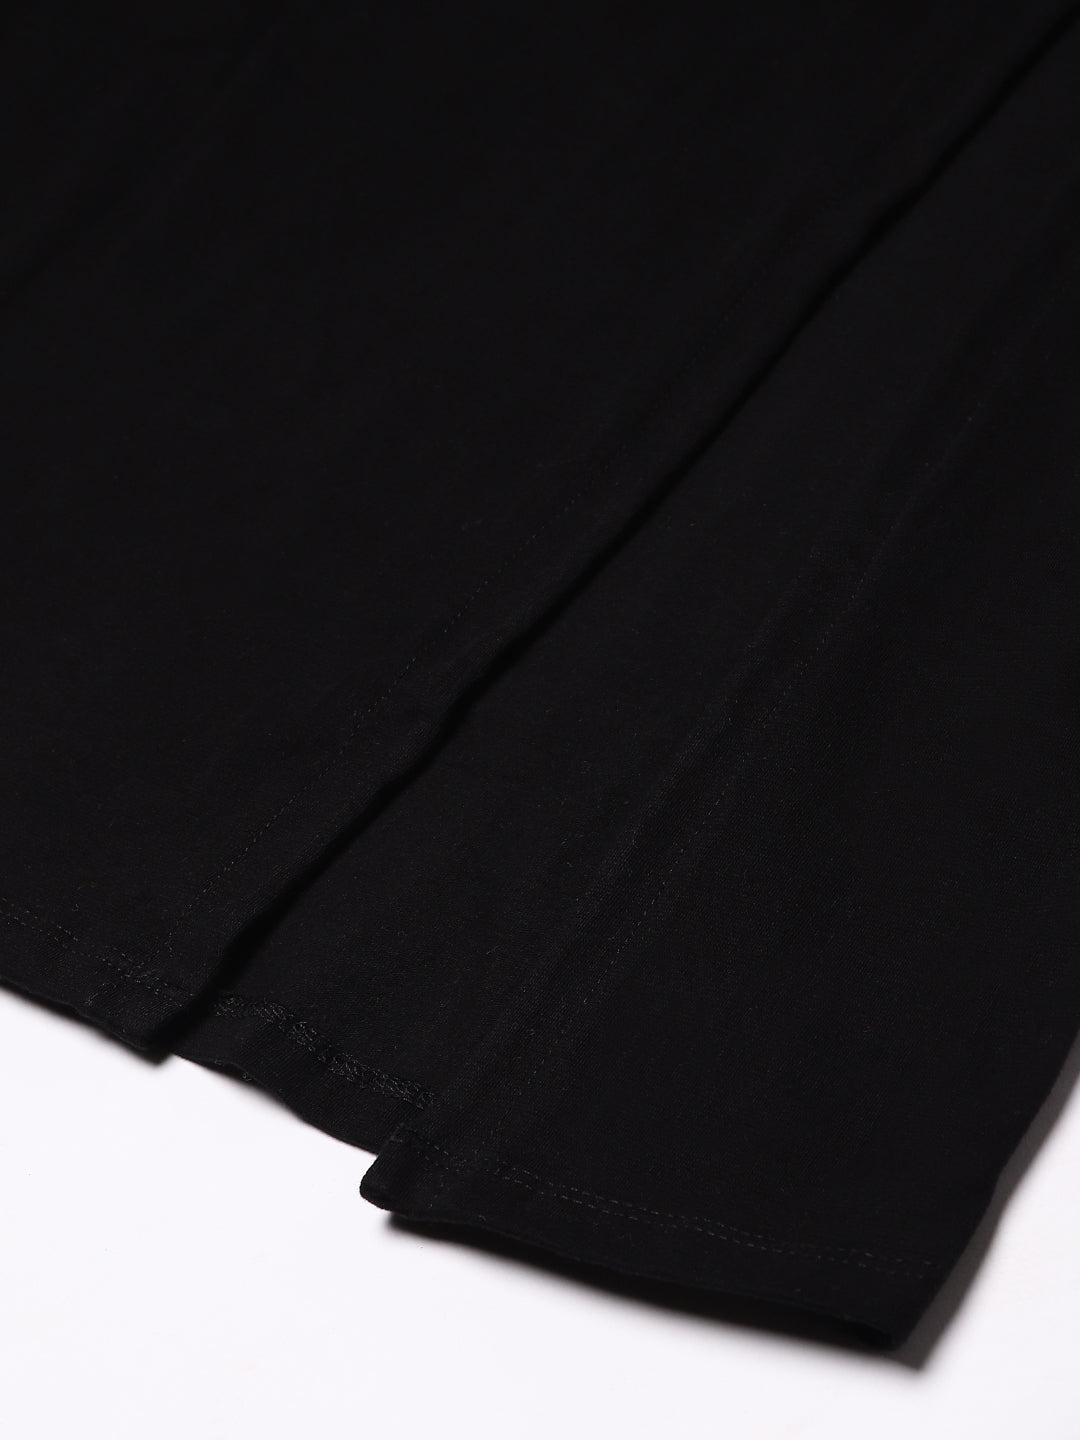 Front Slit Solid Black Dress